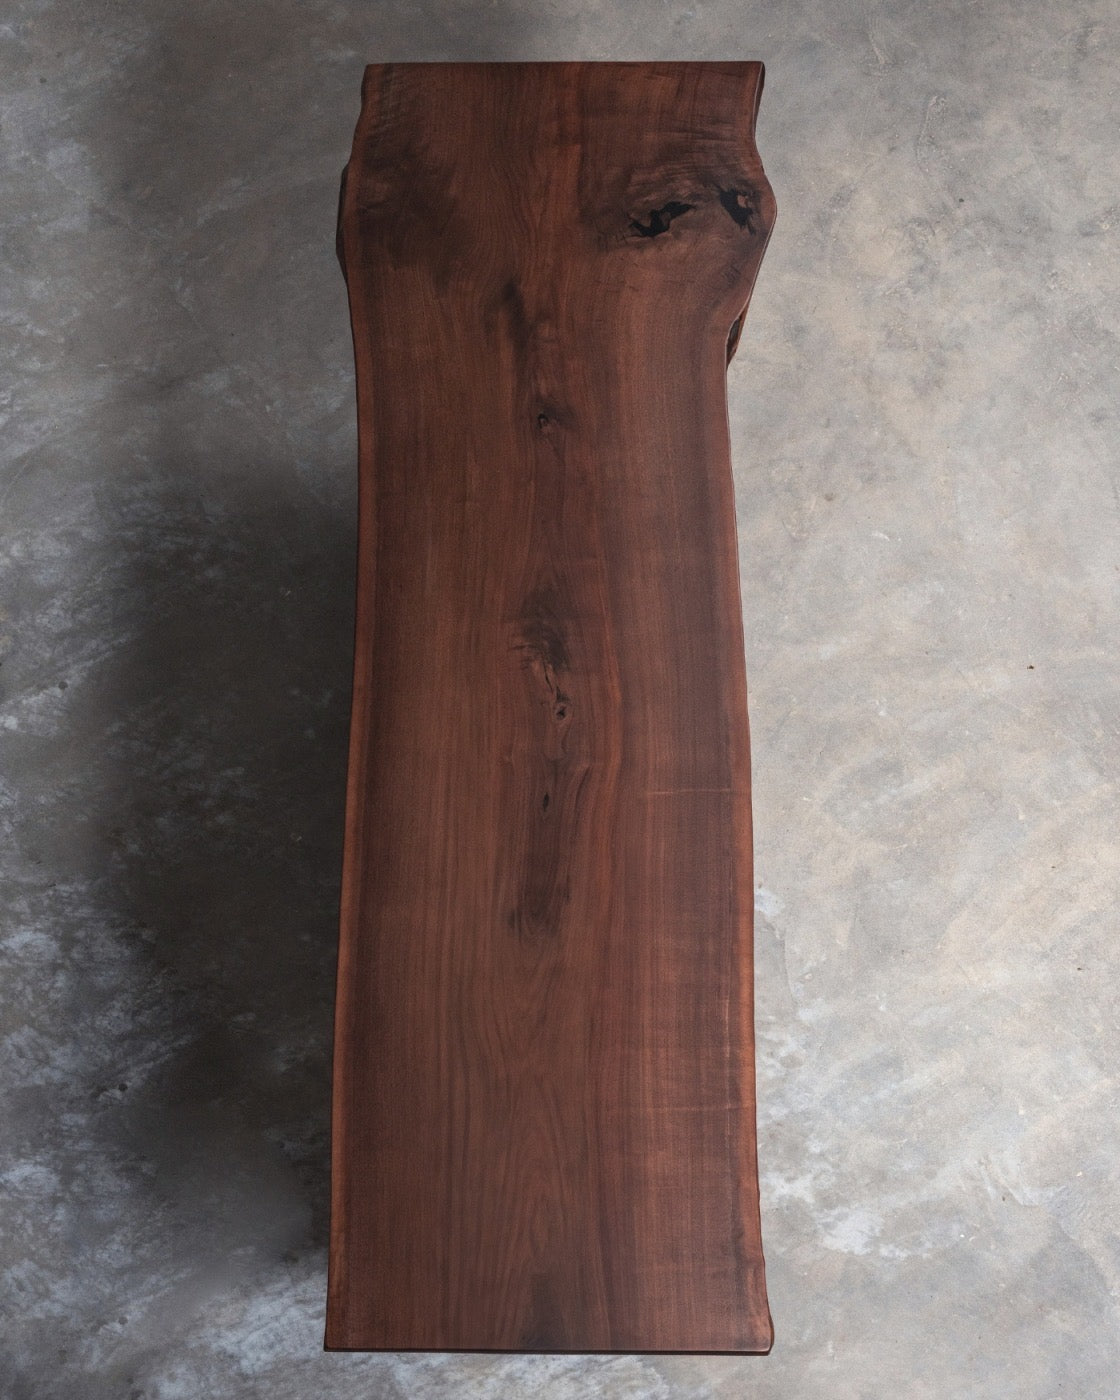 Wood Slabs Table Tops, American walnut slab, Black Walnut Slab Table